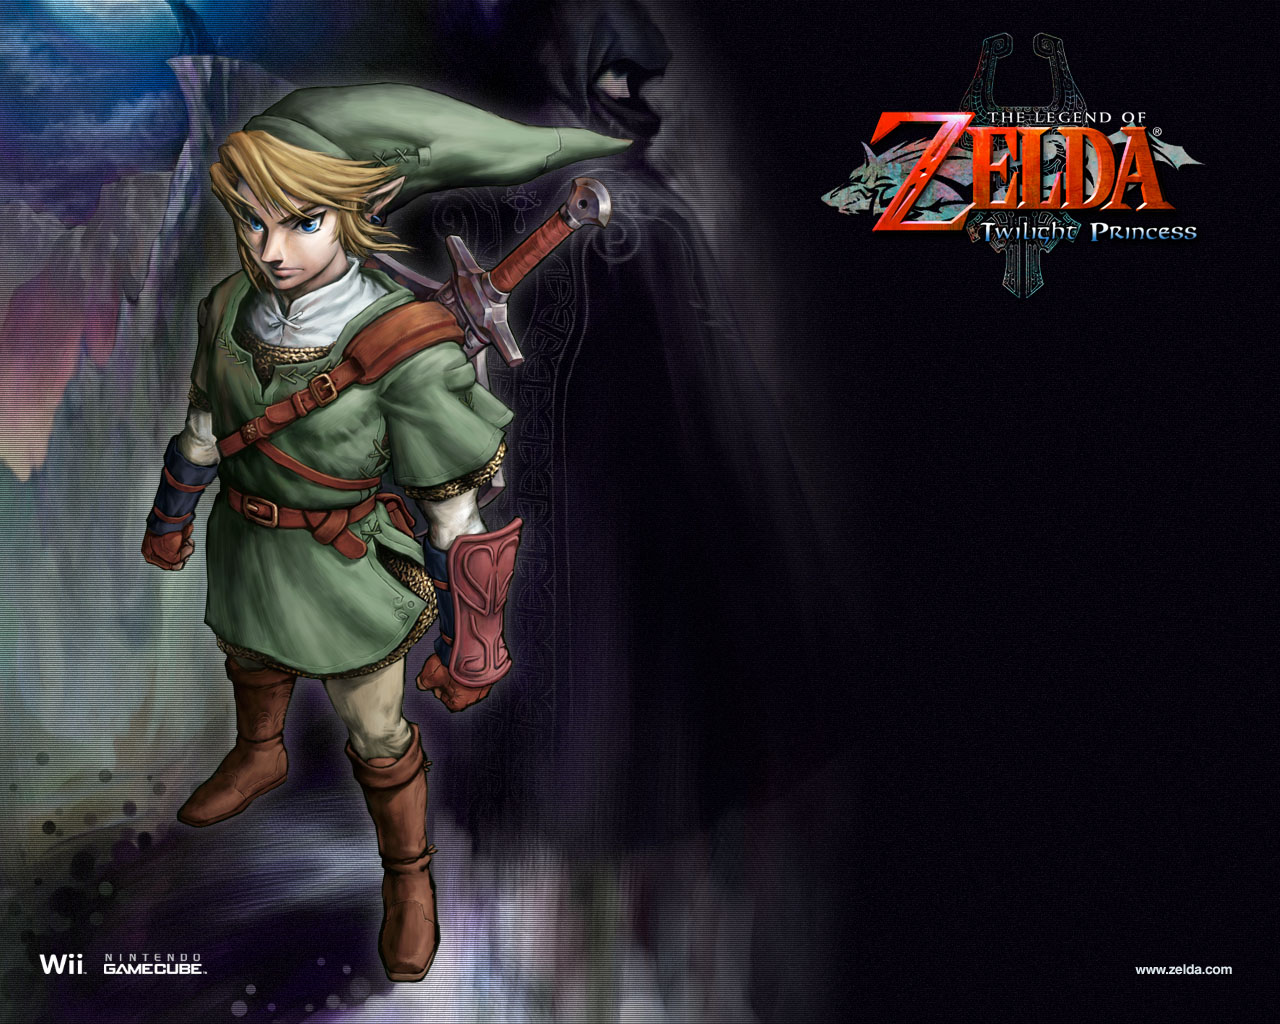 Bilder von The Legend of Zelda Spiele 562x450 computerspiel